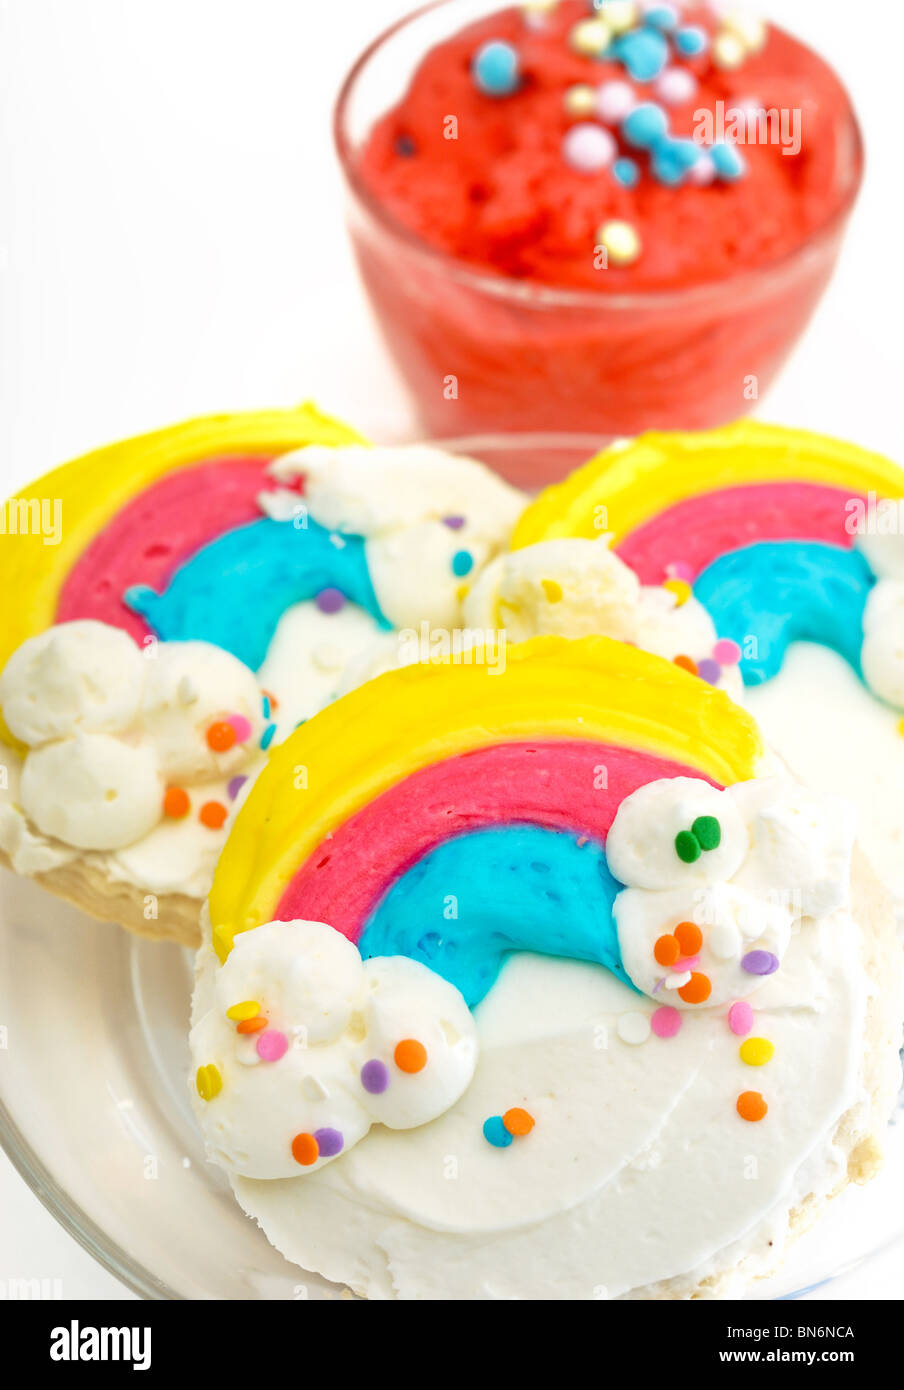 Decorato in maniera colorata rainbow i cookie su una piastra, accompagnato da gelato di mango con condimenti. Foto Stock